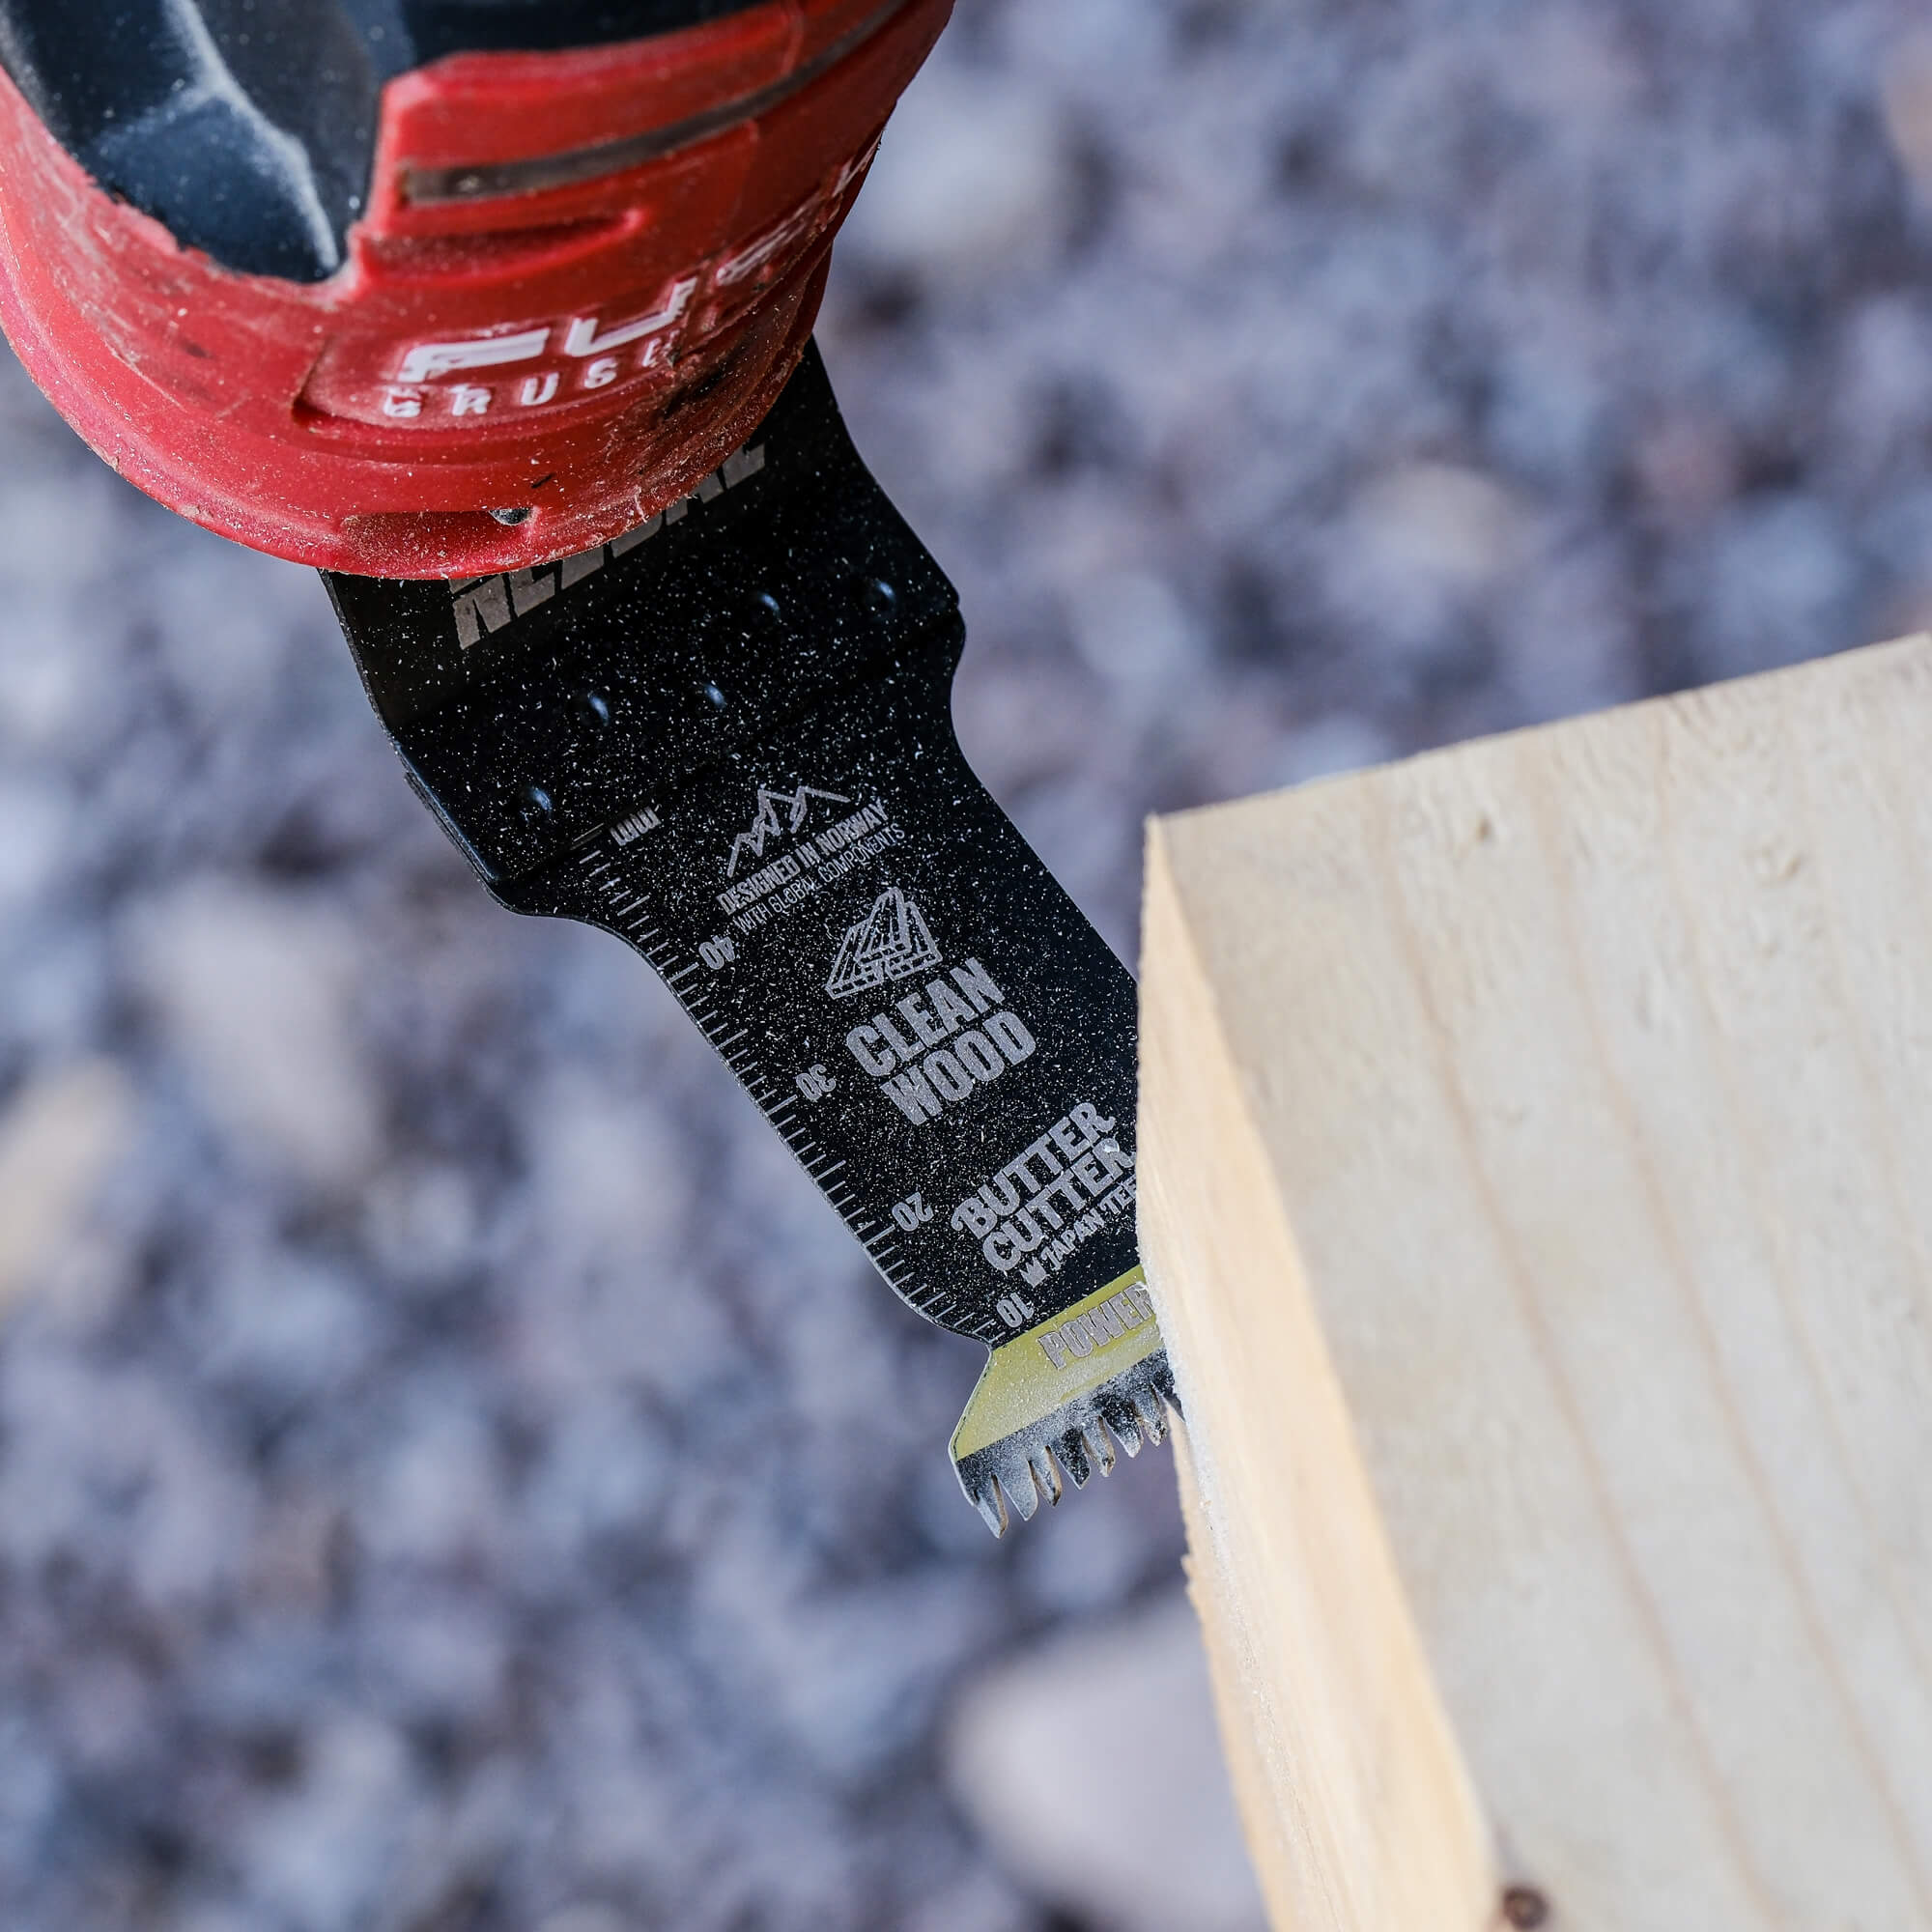 Power arch sågblad til multiverktyg för sågning i rent trä